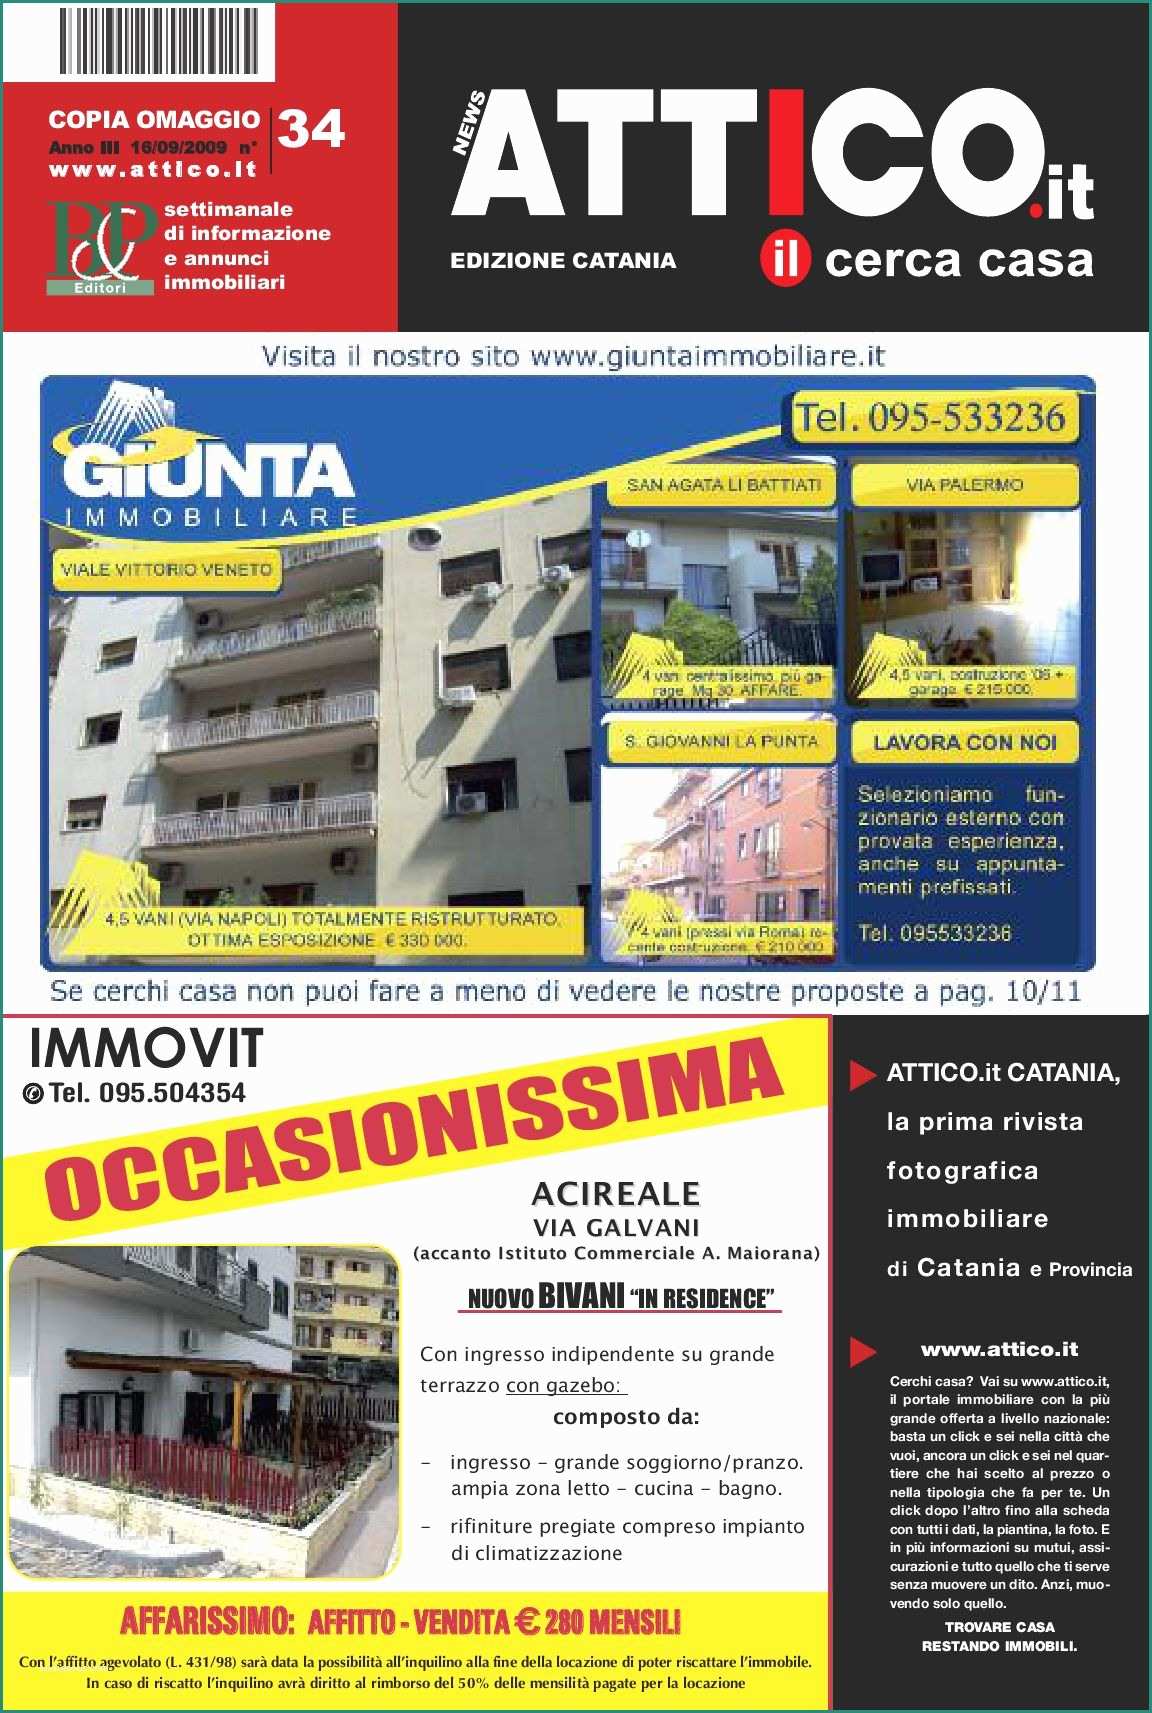 Casa Mobile Su Terreno Agricolo E attico Catania by B&p Editori issuu